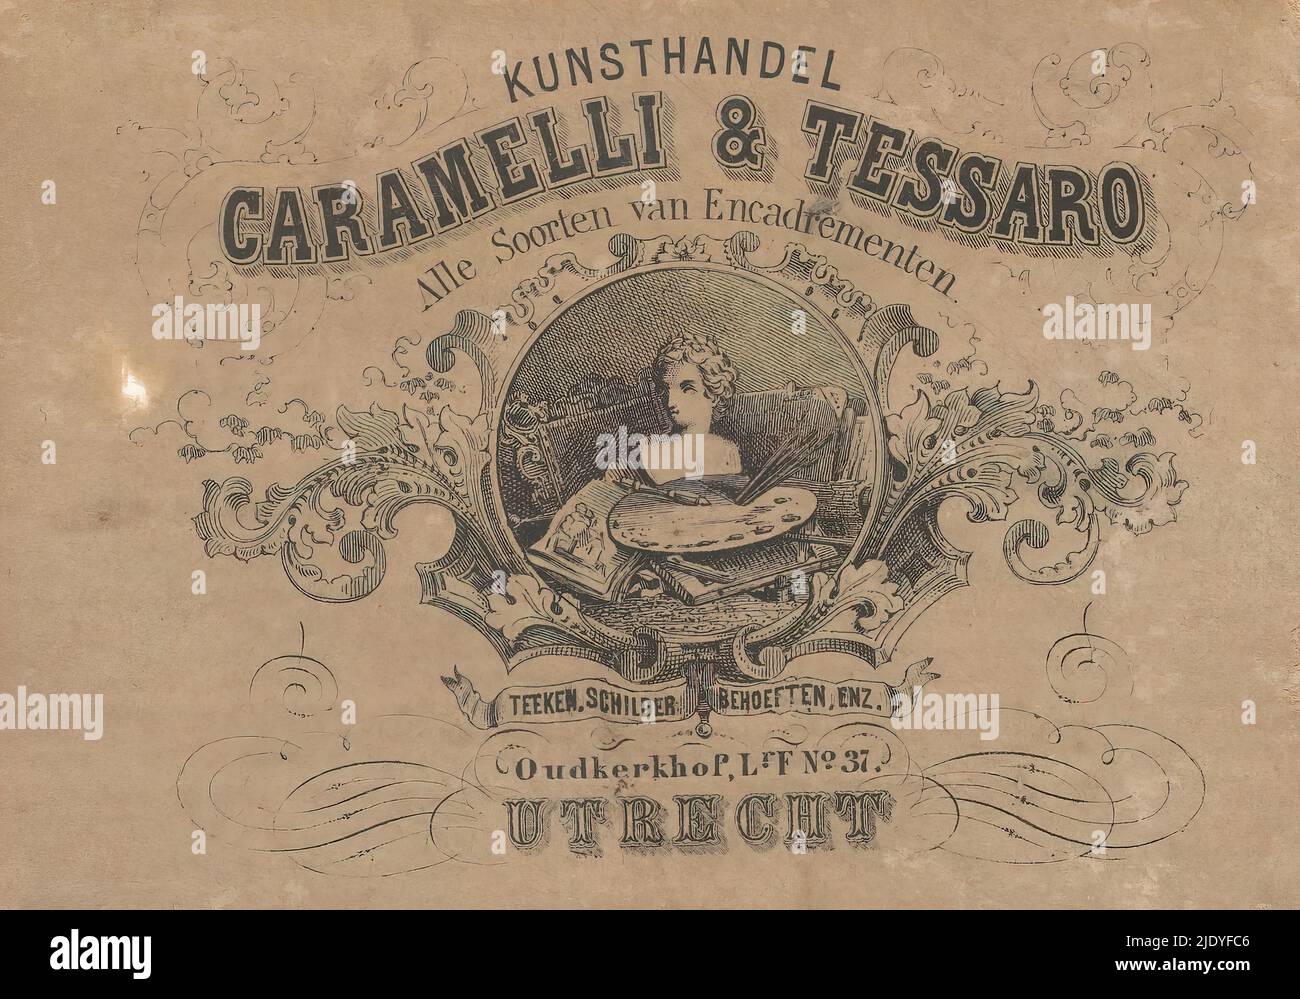 Label du marchand d'art Caramelli & Tessaro à Utrecht, Cartouche avec des matériaux de peinture, un buste et une bordure décorative., imprimerie: Anonyme, 1912 - 1924, papier, hauteur 84 mm × largeur 118 mm Banque D'Images